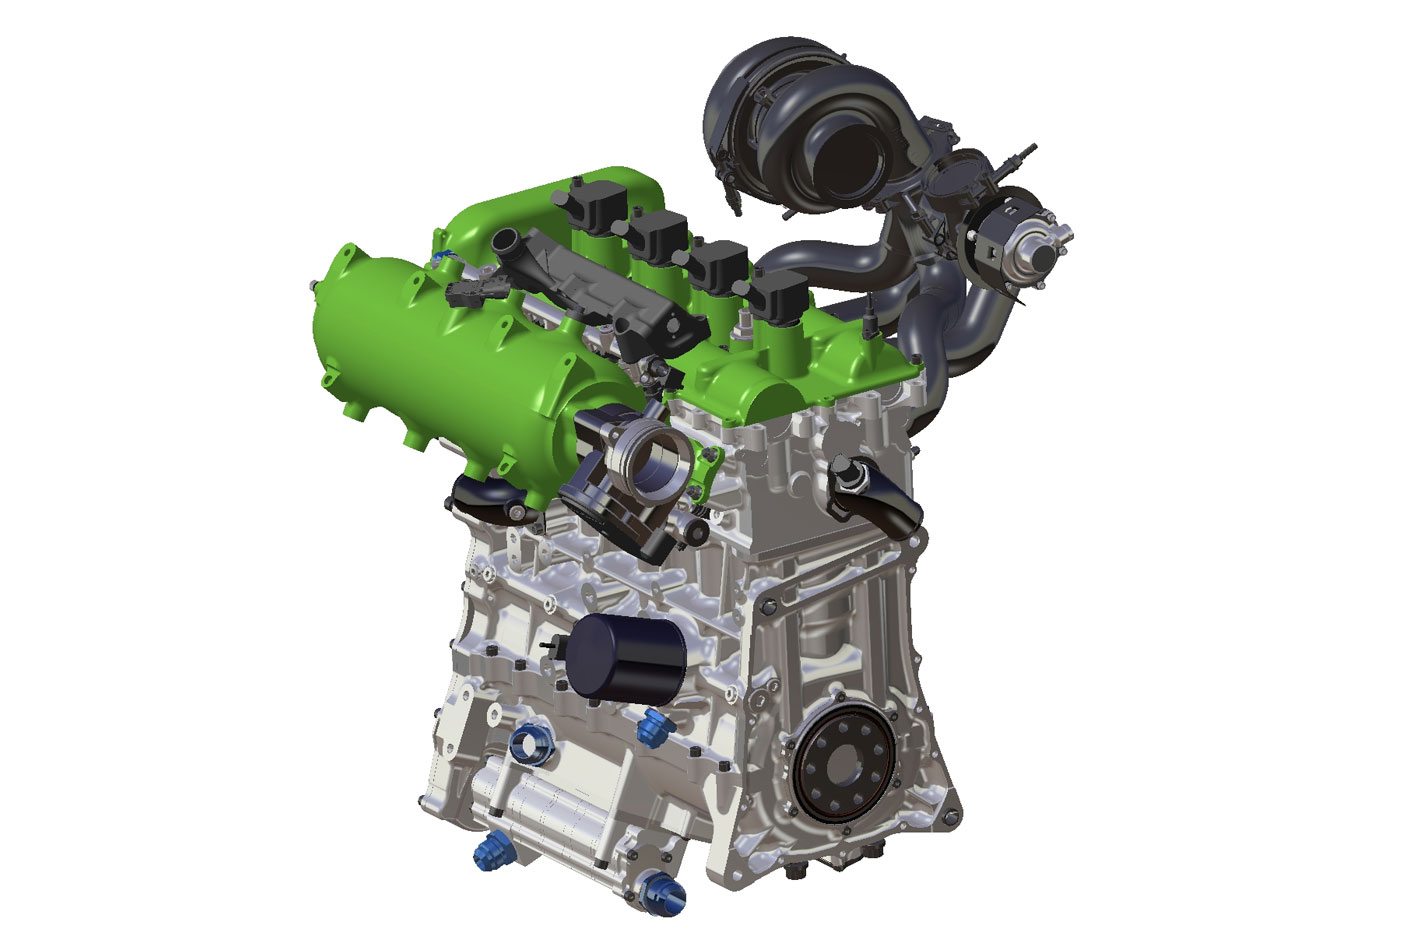 CRMT et HORIBA vont tester le moteur hydrogène de Pipo Moteurs